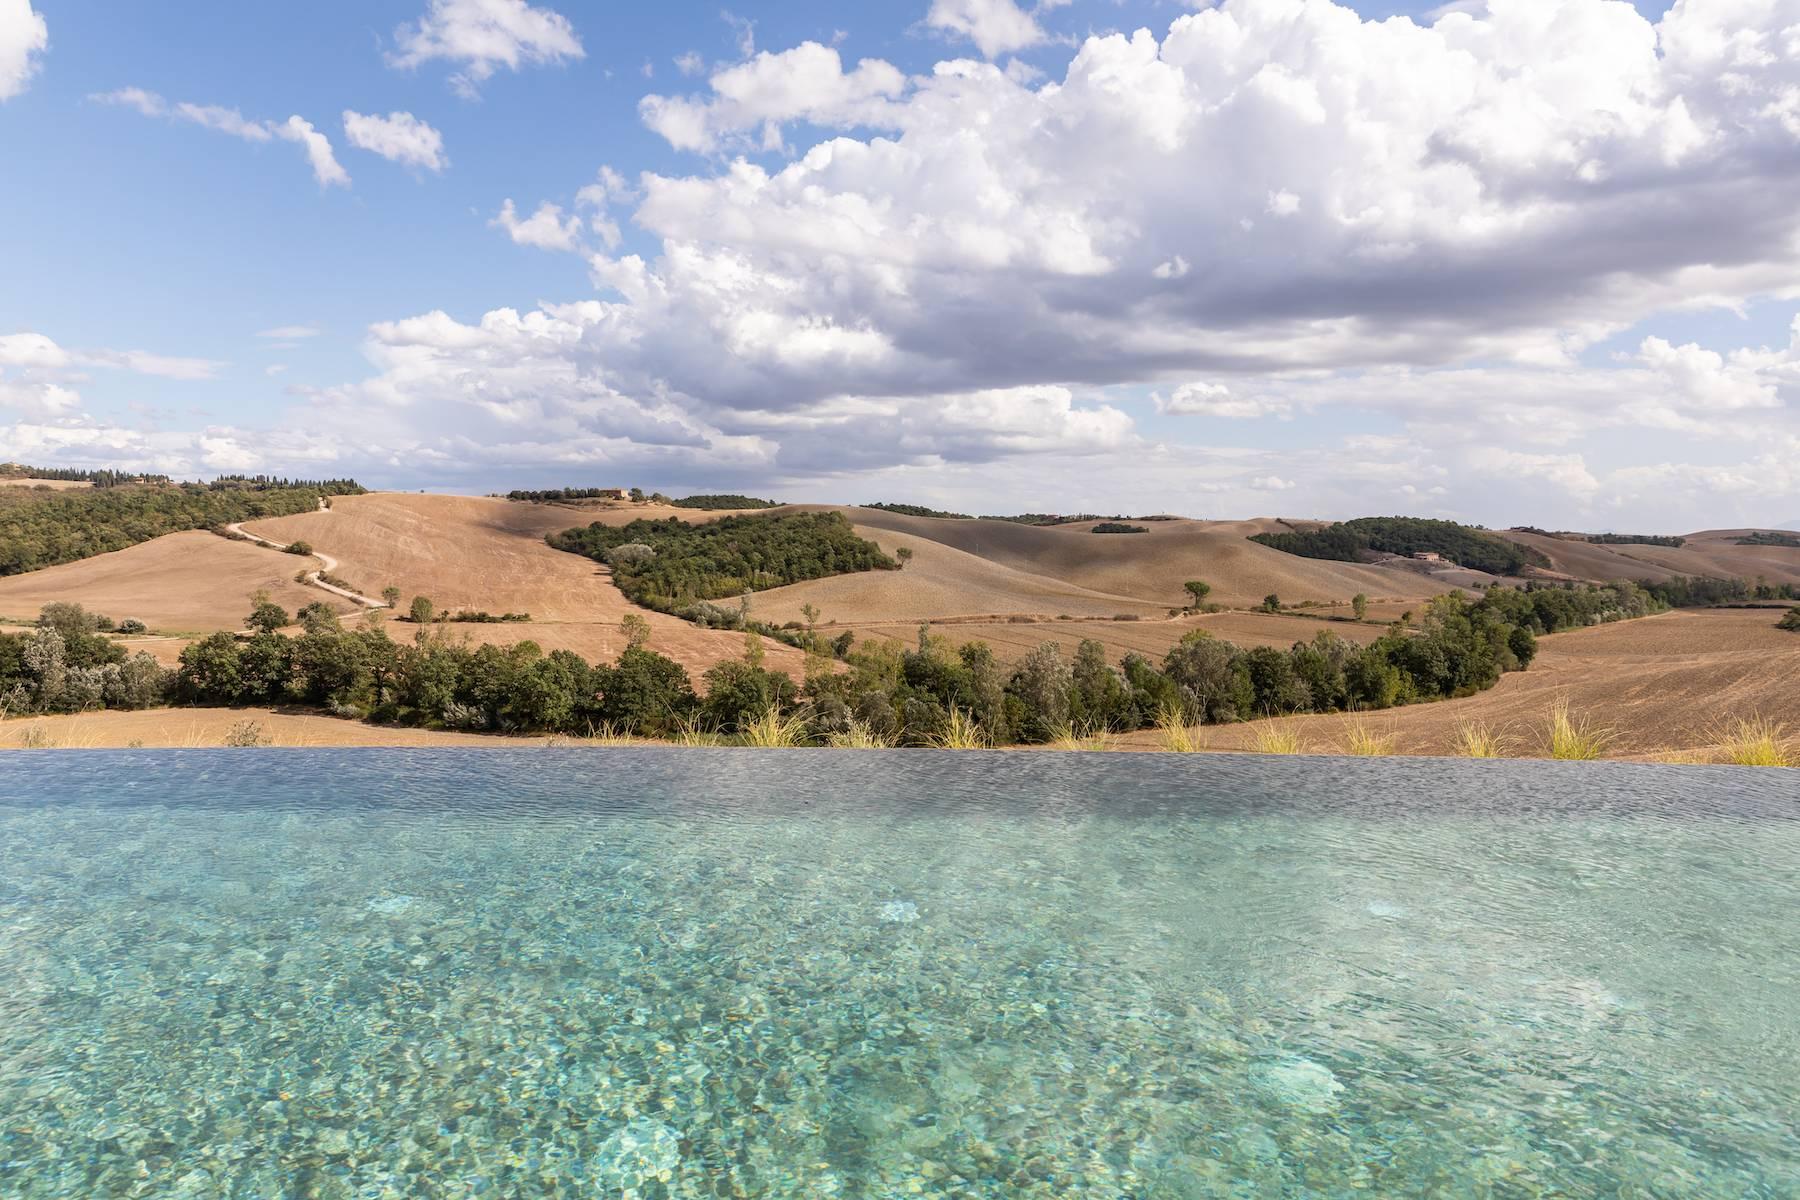 Splendida proprietà in collina nel cuore della Toscana con vista a 360 gradi - 23